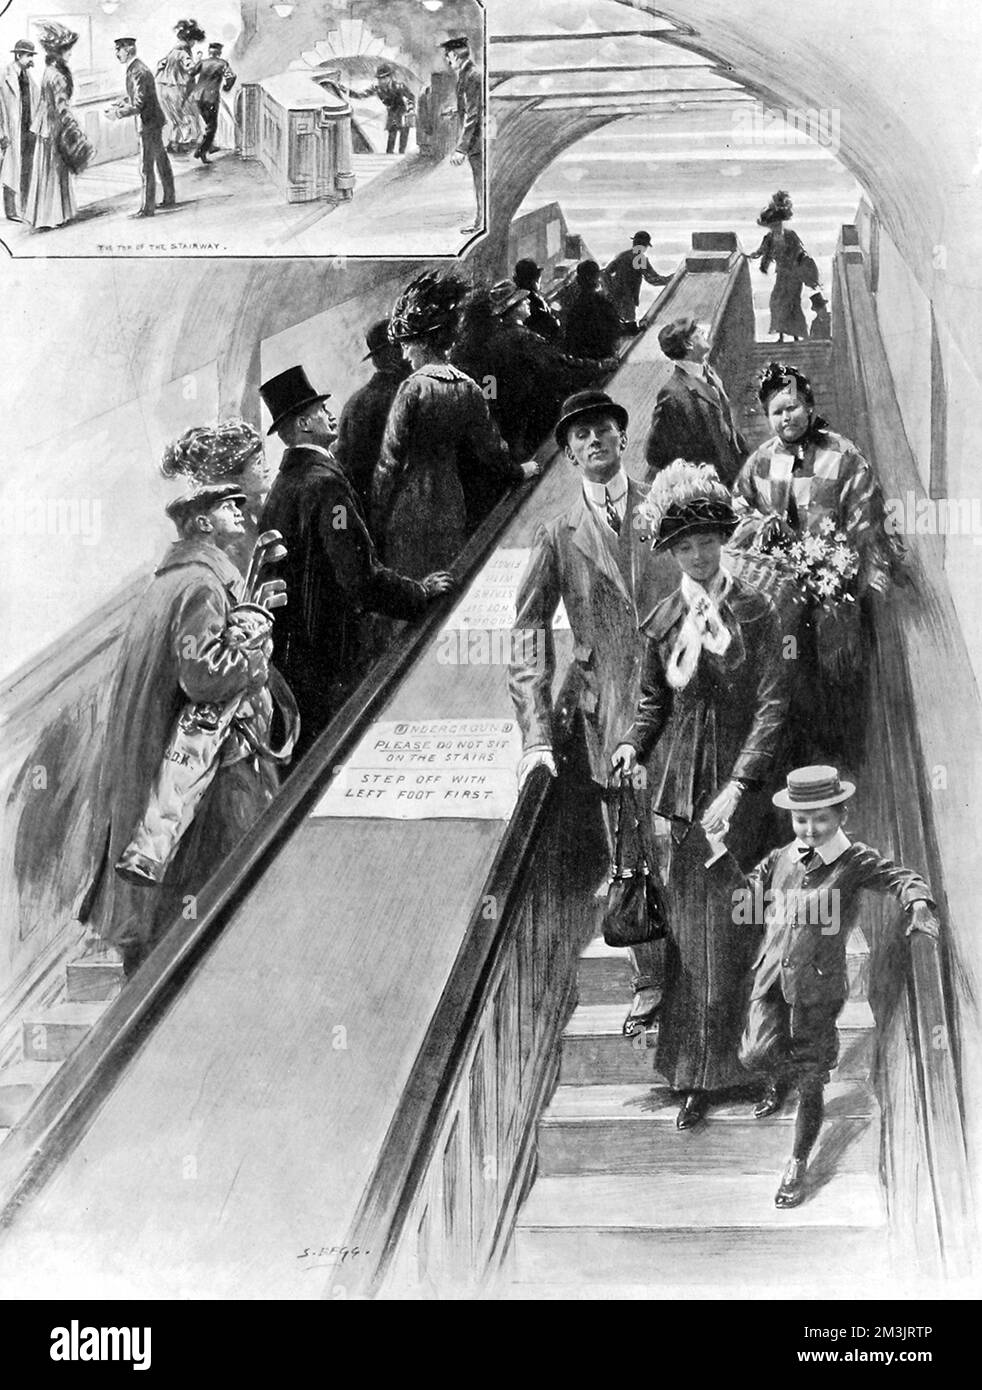 Die ersten Rolltreppen, die jemals in der U-Bahn installiert wurden, zwischen dem District und den Piccadilly-Bahnhöfen am Bahnhof Earls Court. Zu der Zeit wurde den Passagieren, die sie benutzten, eine tolle Unterhaltung geboten. Datum: 1911 Stockfoto